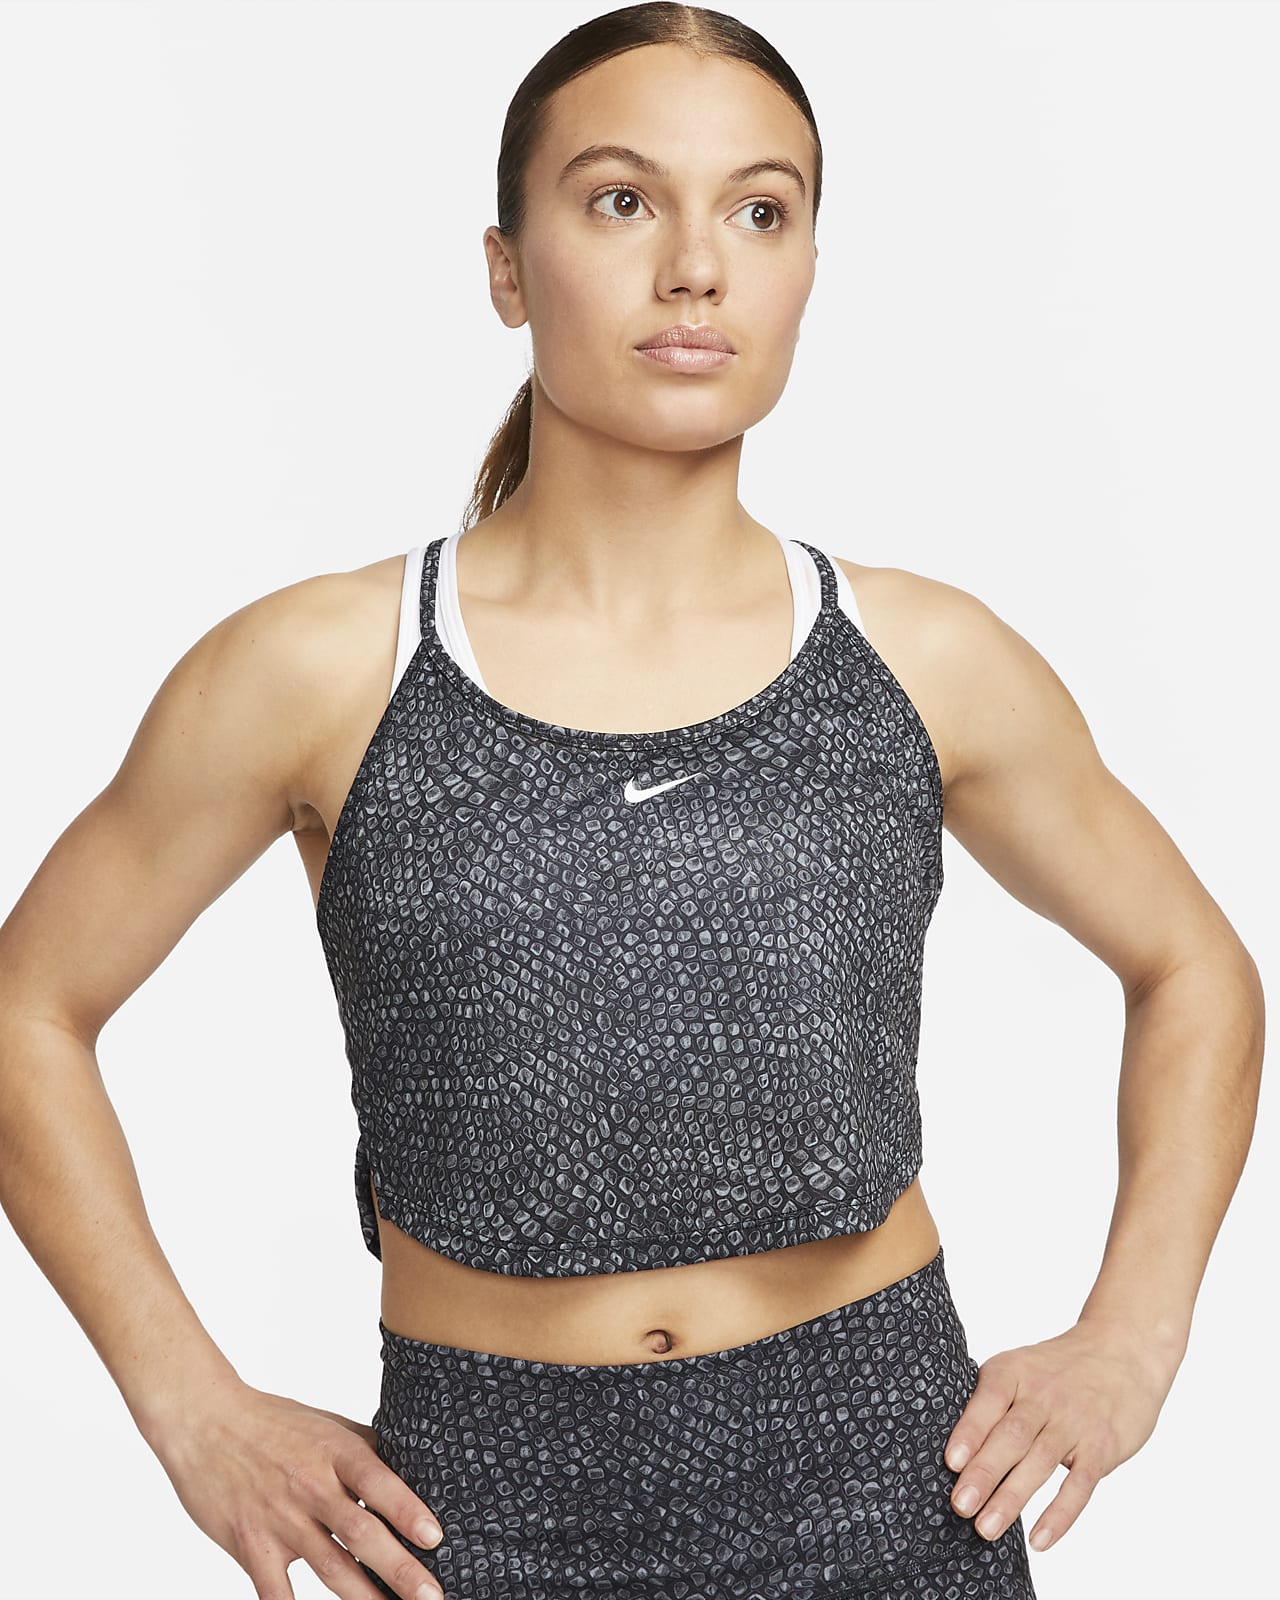 Nike Dri-FIT One rövid szabású, mintás női trikó